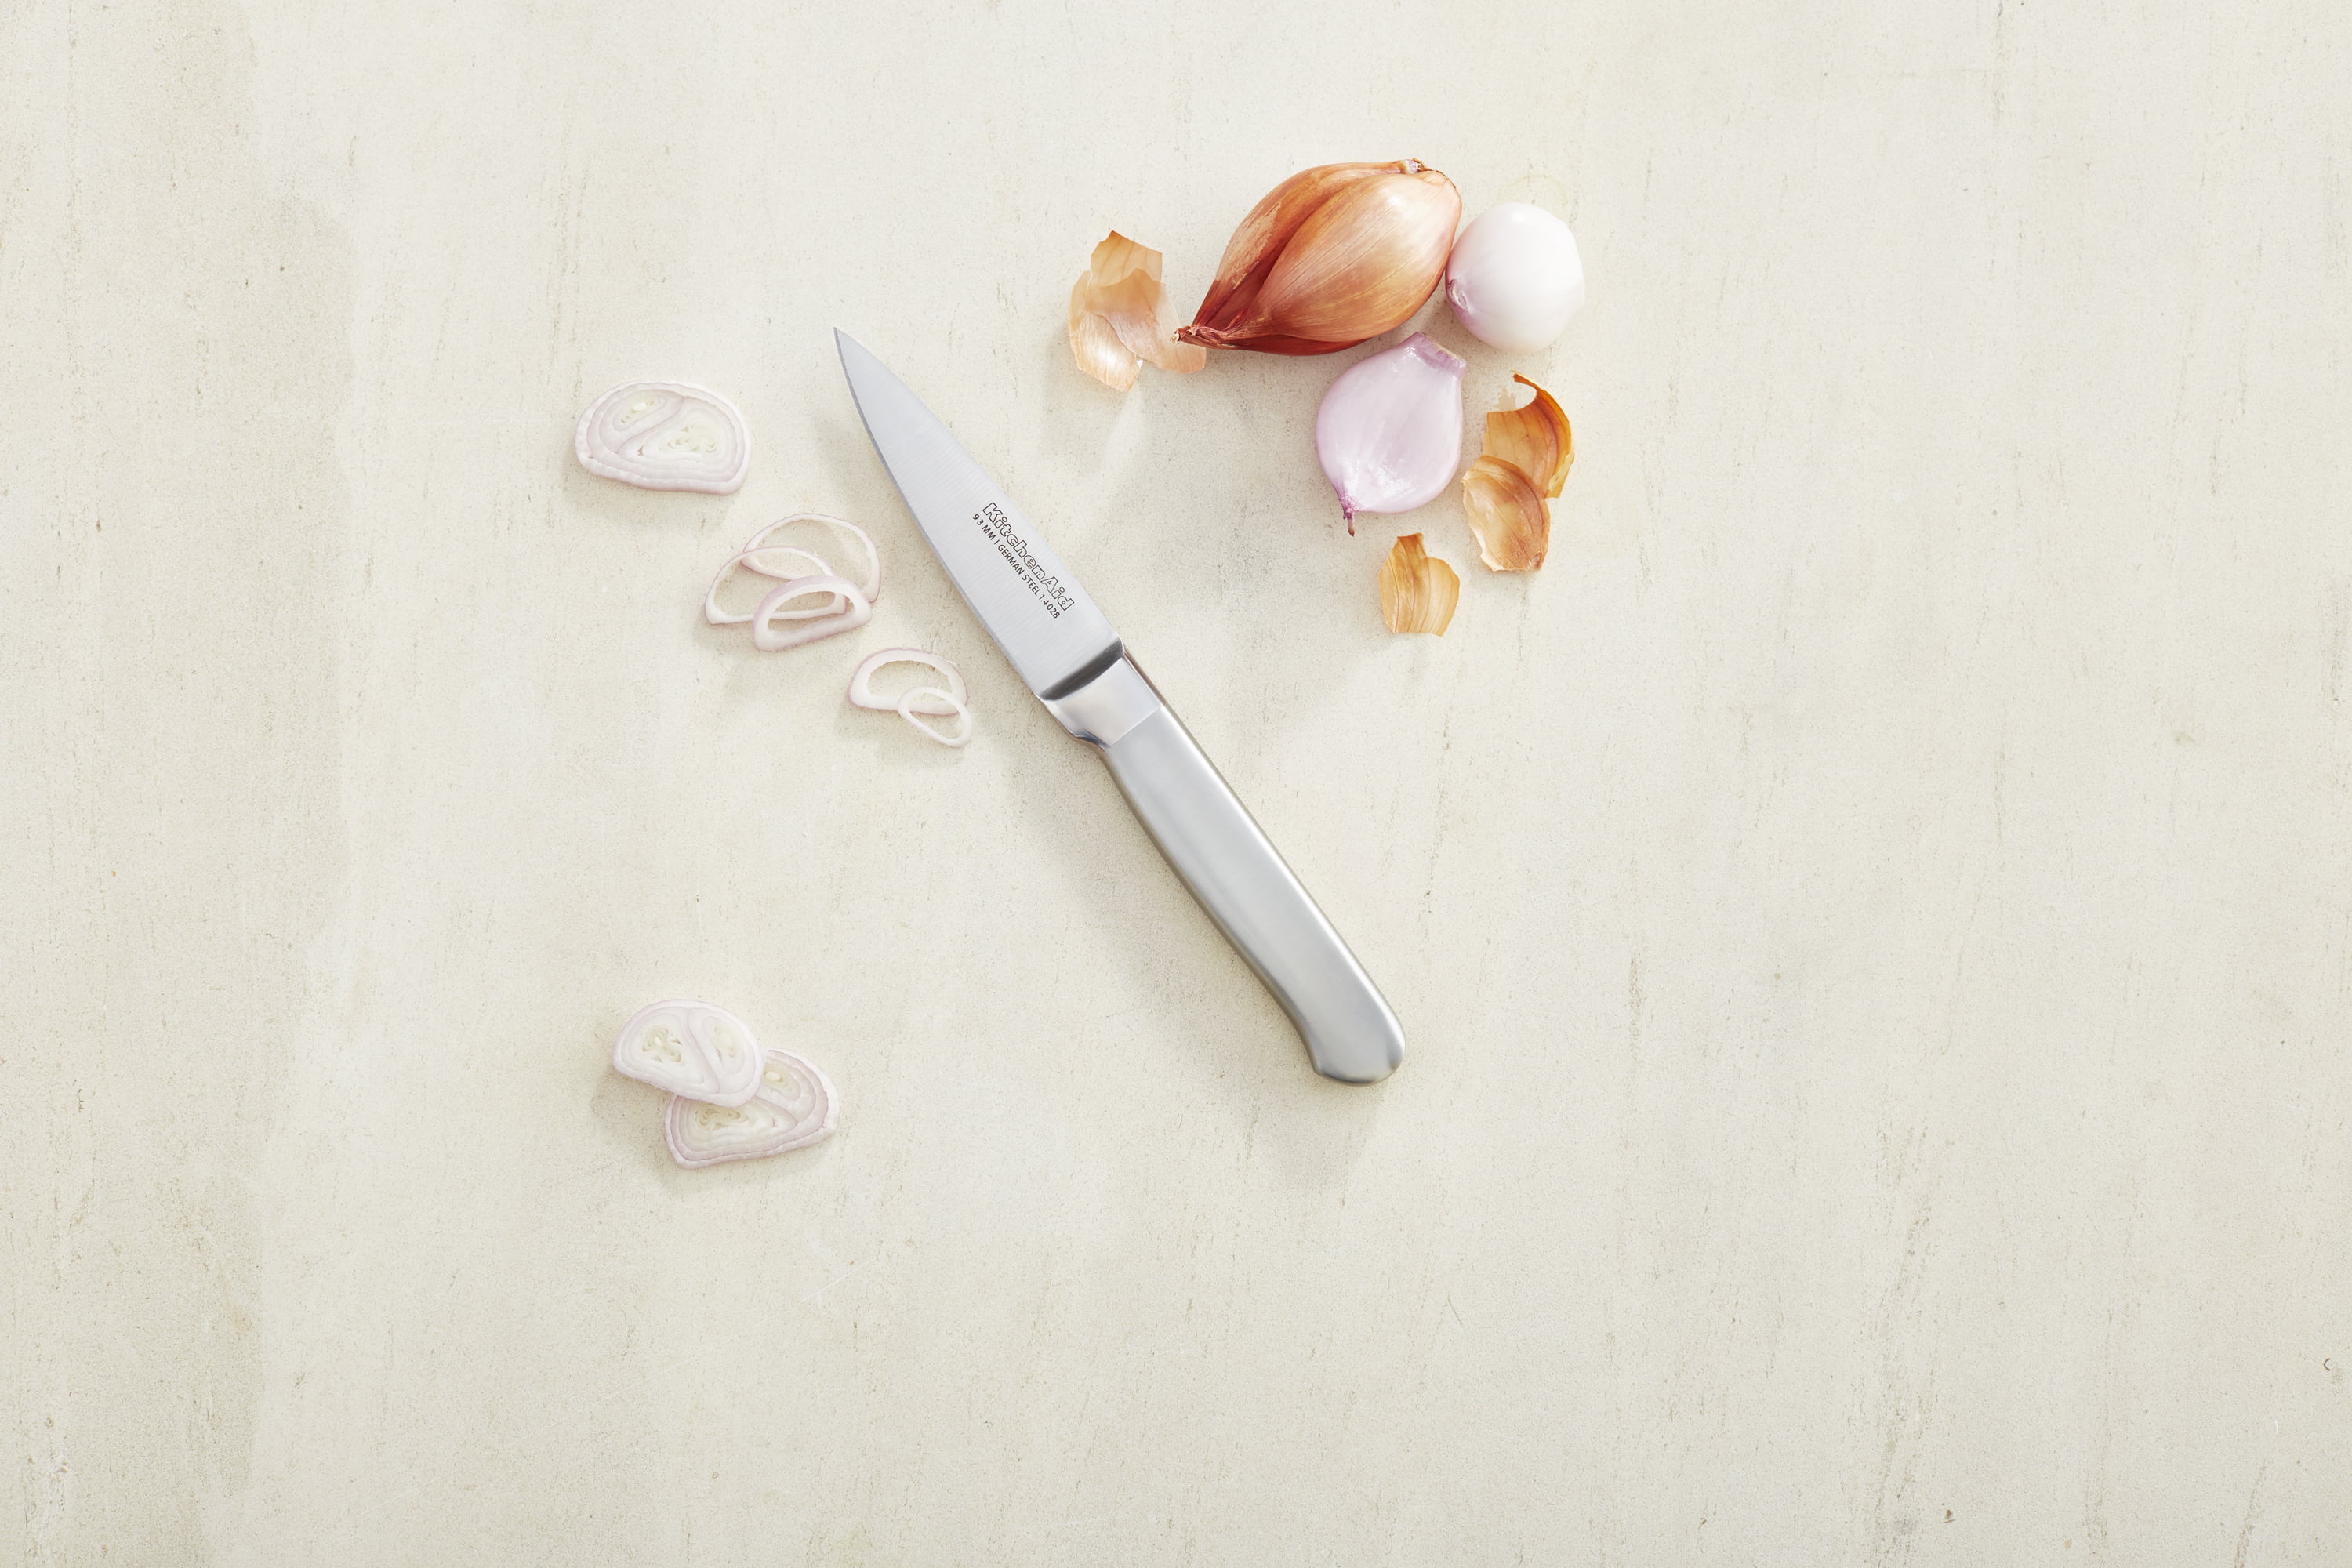 KitchenAid Classic 3.5 Paring Knife with Sheath - Yahoo Shopping